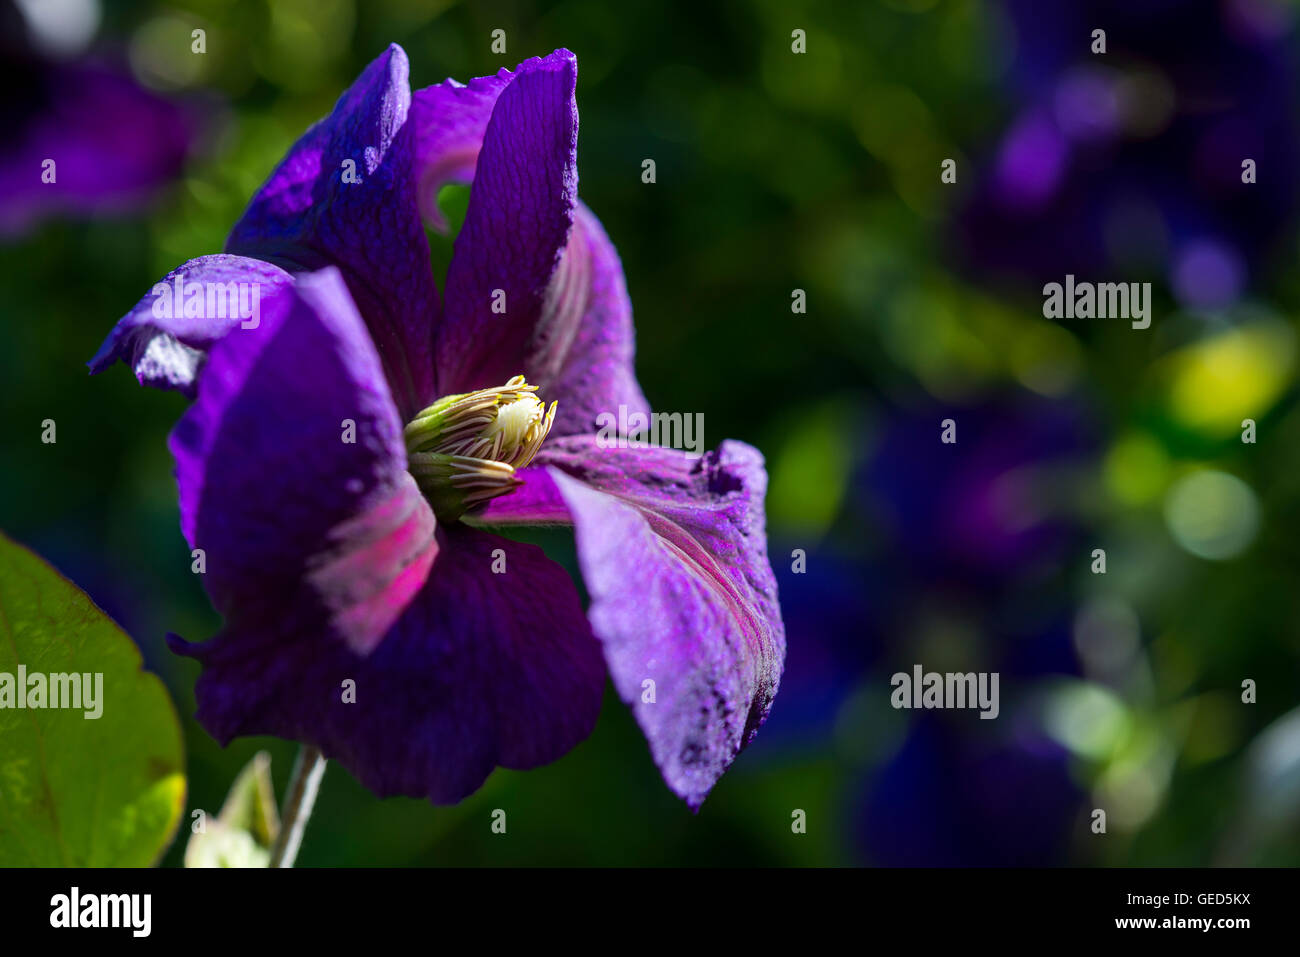 Clematis Jackmanii flower with rich purple petals in a summer garden. Stock Photo